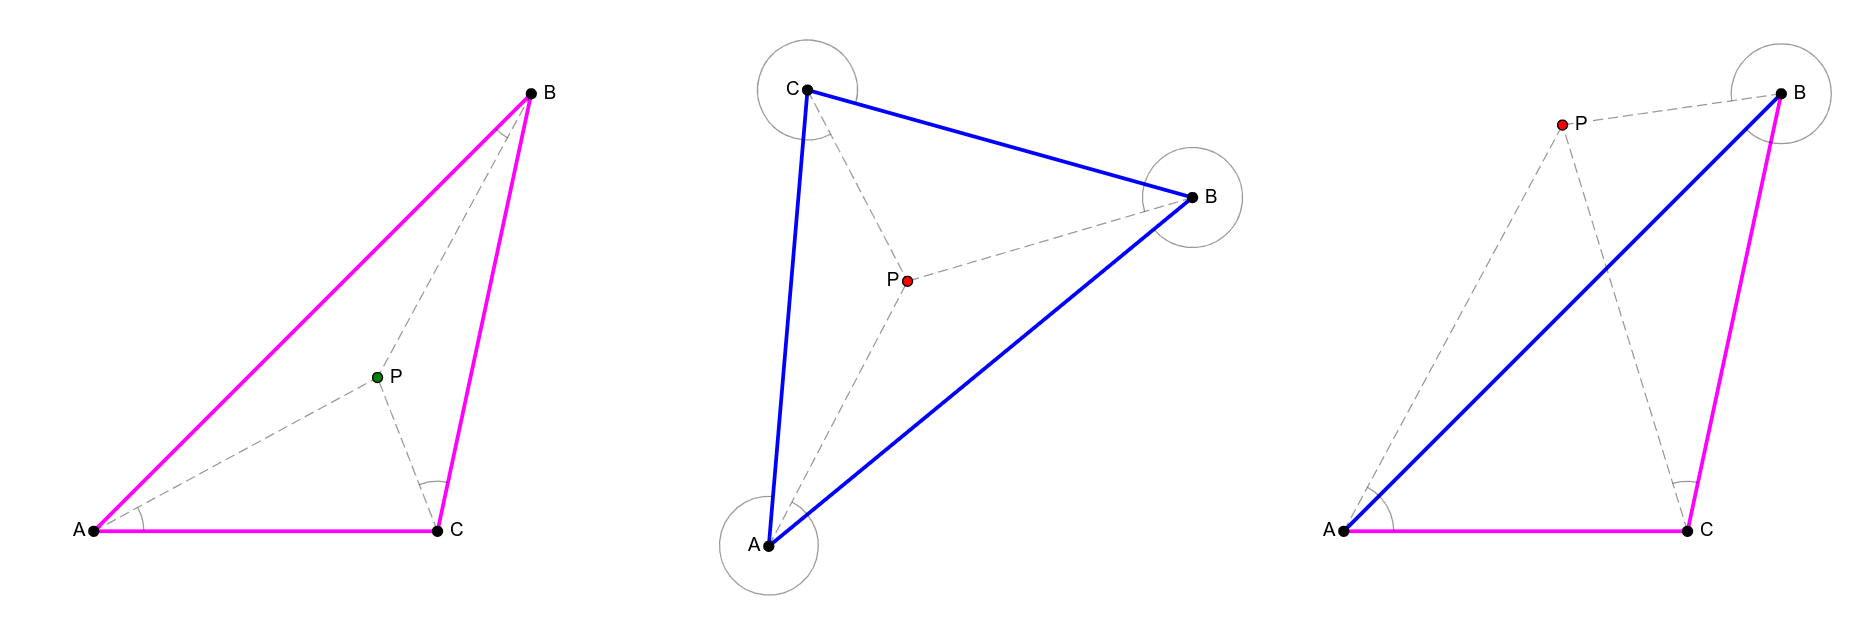 Slika 12: Situacija kada tačka P pripada i kada ne pripada trouglu ABC. U prvom slučaju tačka pripada trouglu i sve trojke ABP, BCP i CAP su negativno orijentisane (svi uglovi ABP, BCP i CAP su konveksni). U drugom slučaju tačka pripada trouglu, a sve tri trojke tačaka su pozitivno orijentisane (svi uglovi su nekonveksni). U trećem slučaju tačka ne pripada trouglu i trojka ABP je pozitivno orijentisana (ugao ABP je nekonveksan), dok su trojke BCP i CAP negativno orijentisane (uglovi BCP i CAP su konveksni).